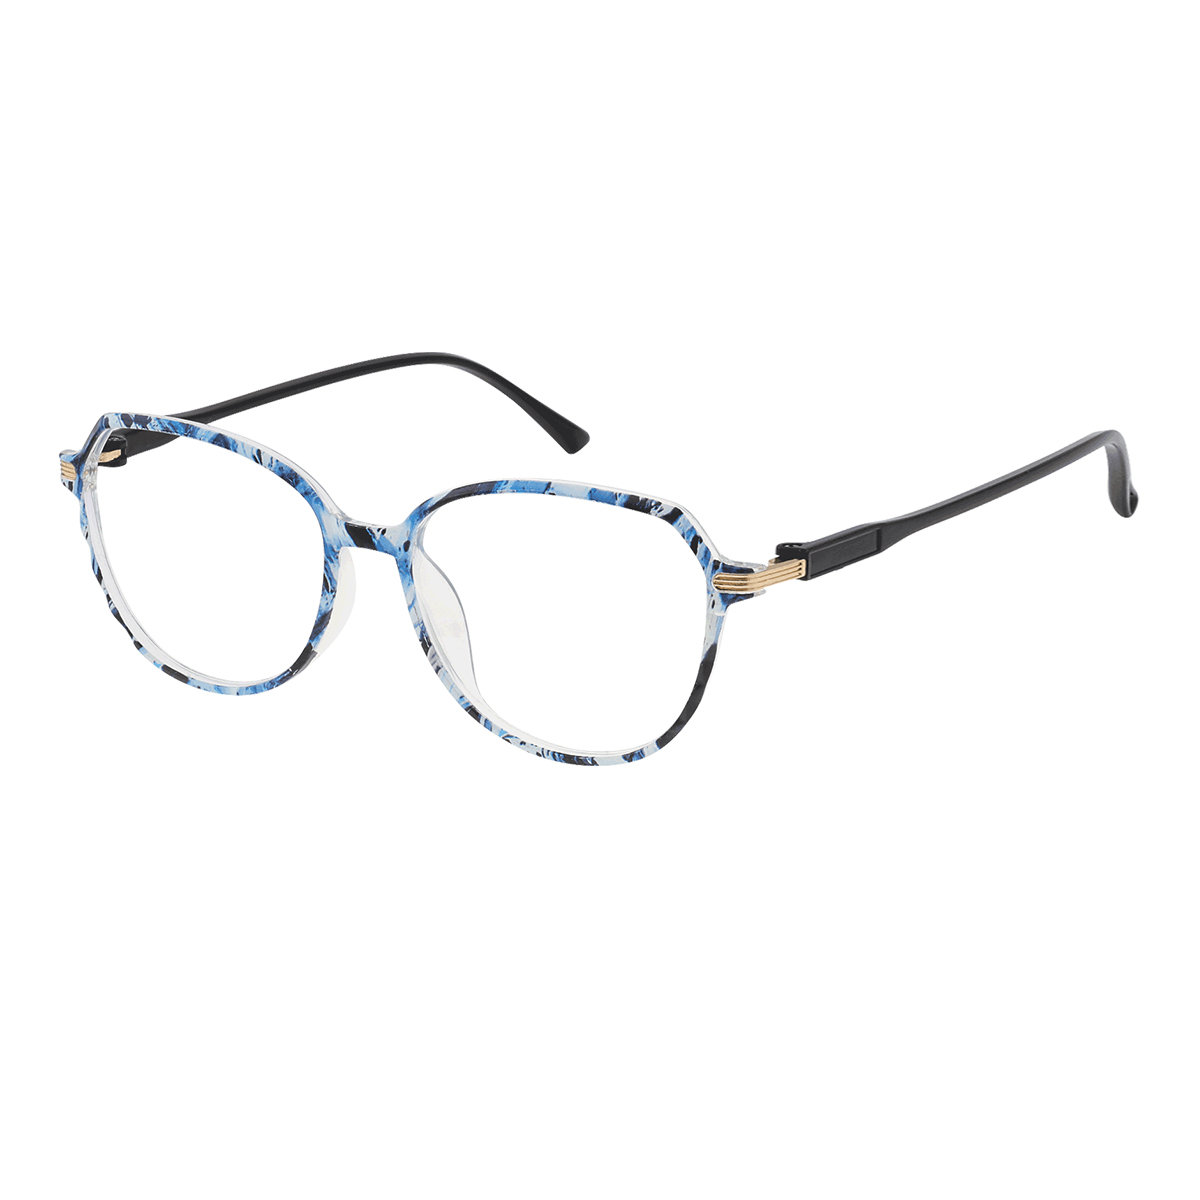 Carnea - Cat-eye Black-Blue Reading Glasses for Women